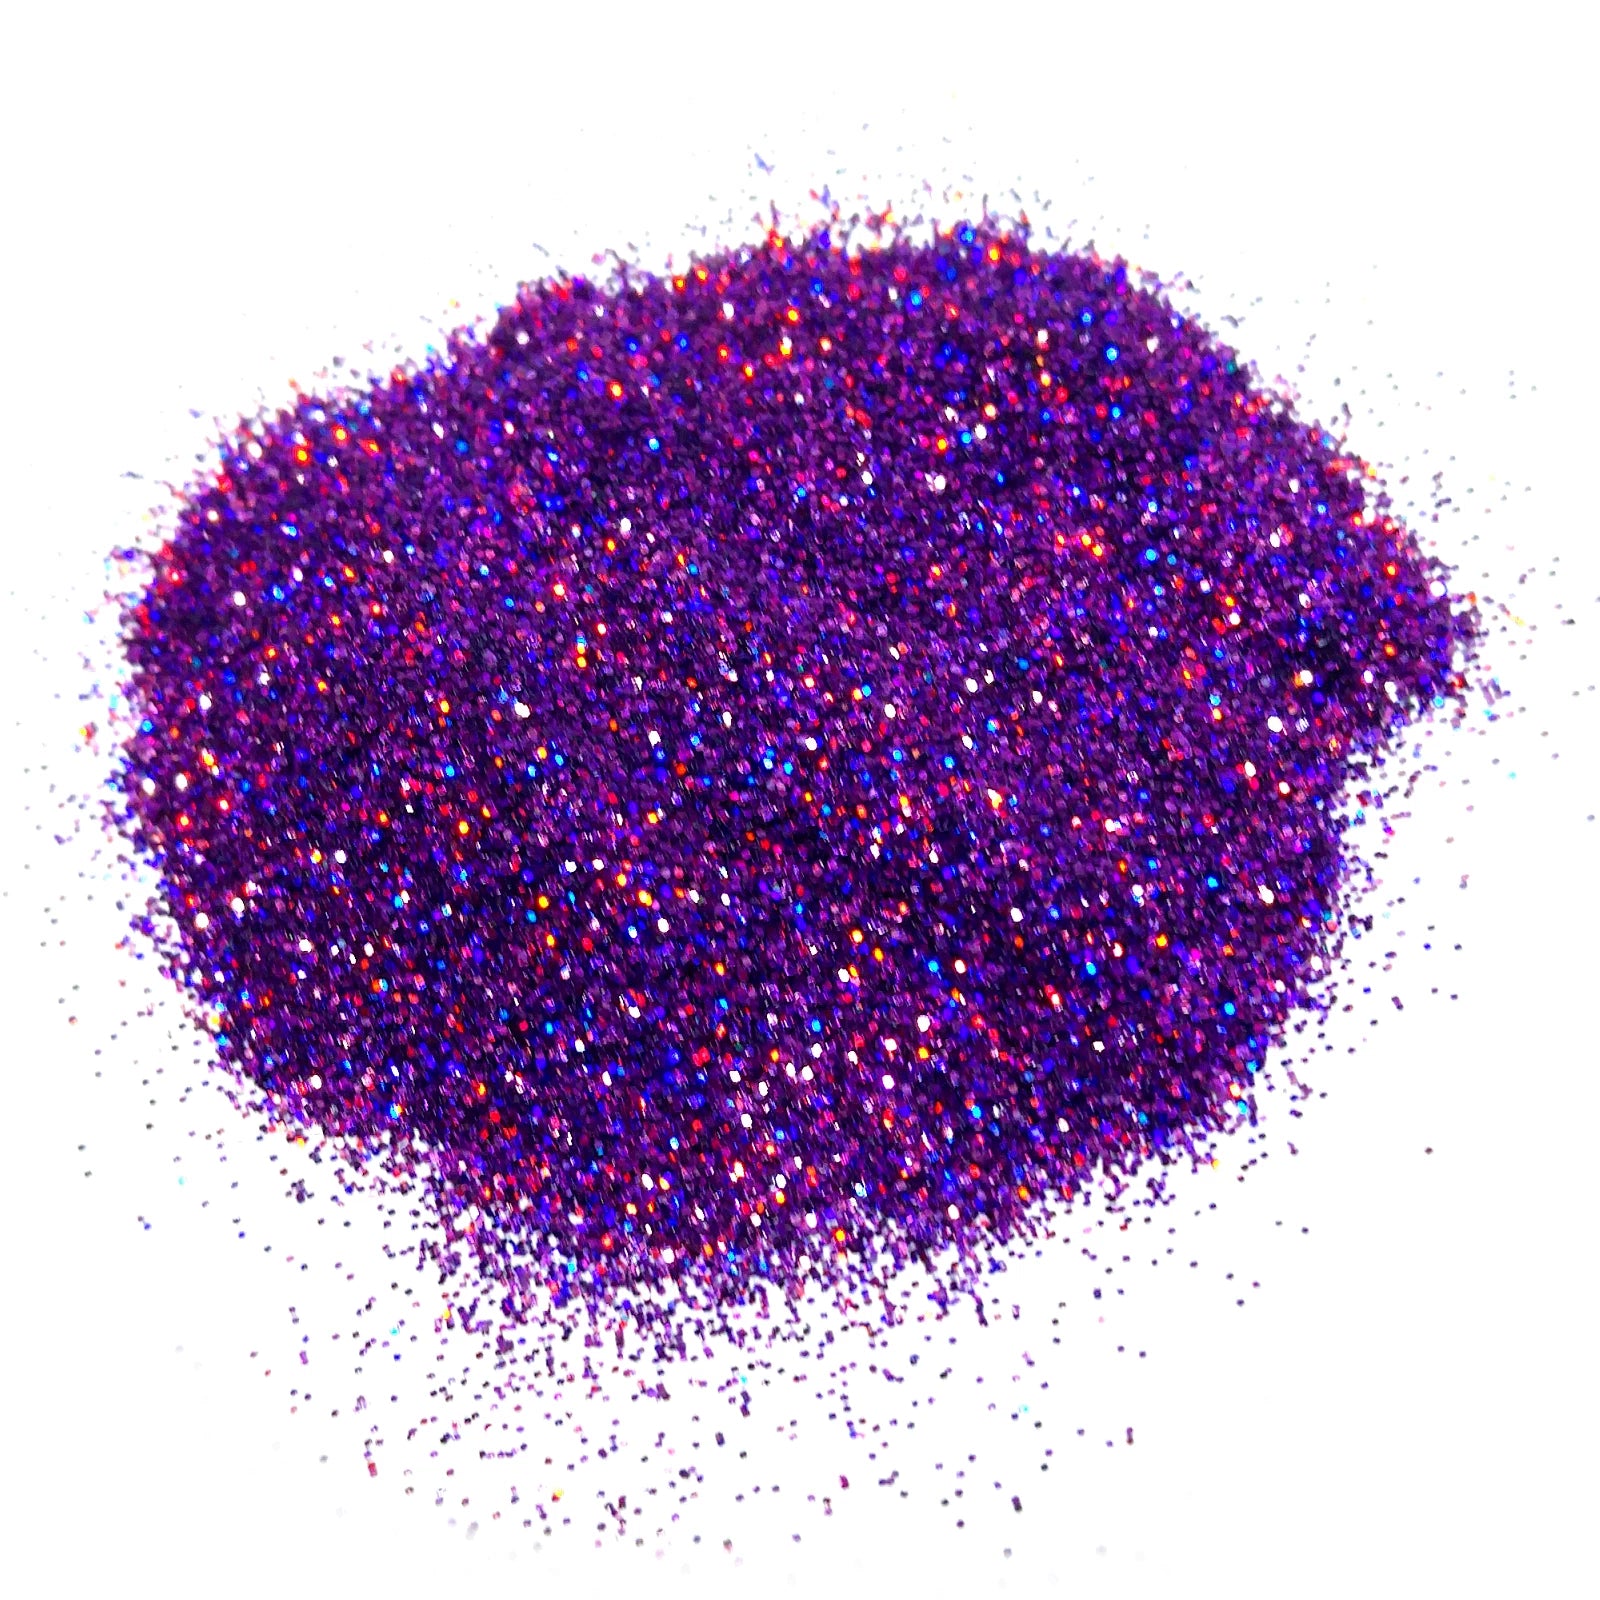 Purple Holographic Fine Glitter .2mm By Crazoulis Glitter